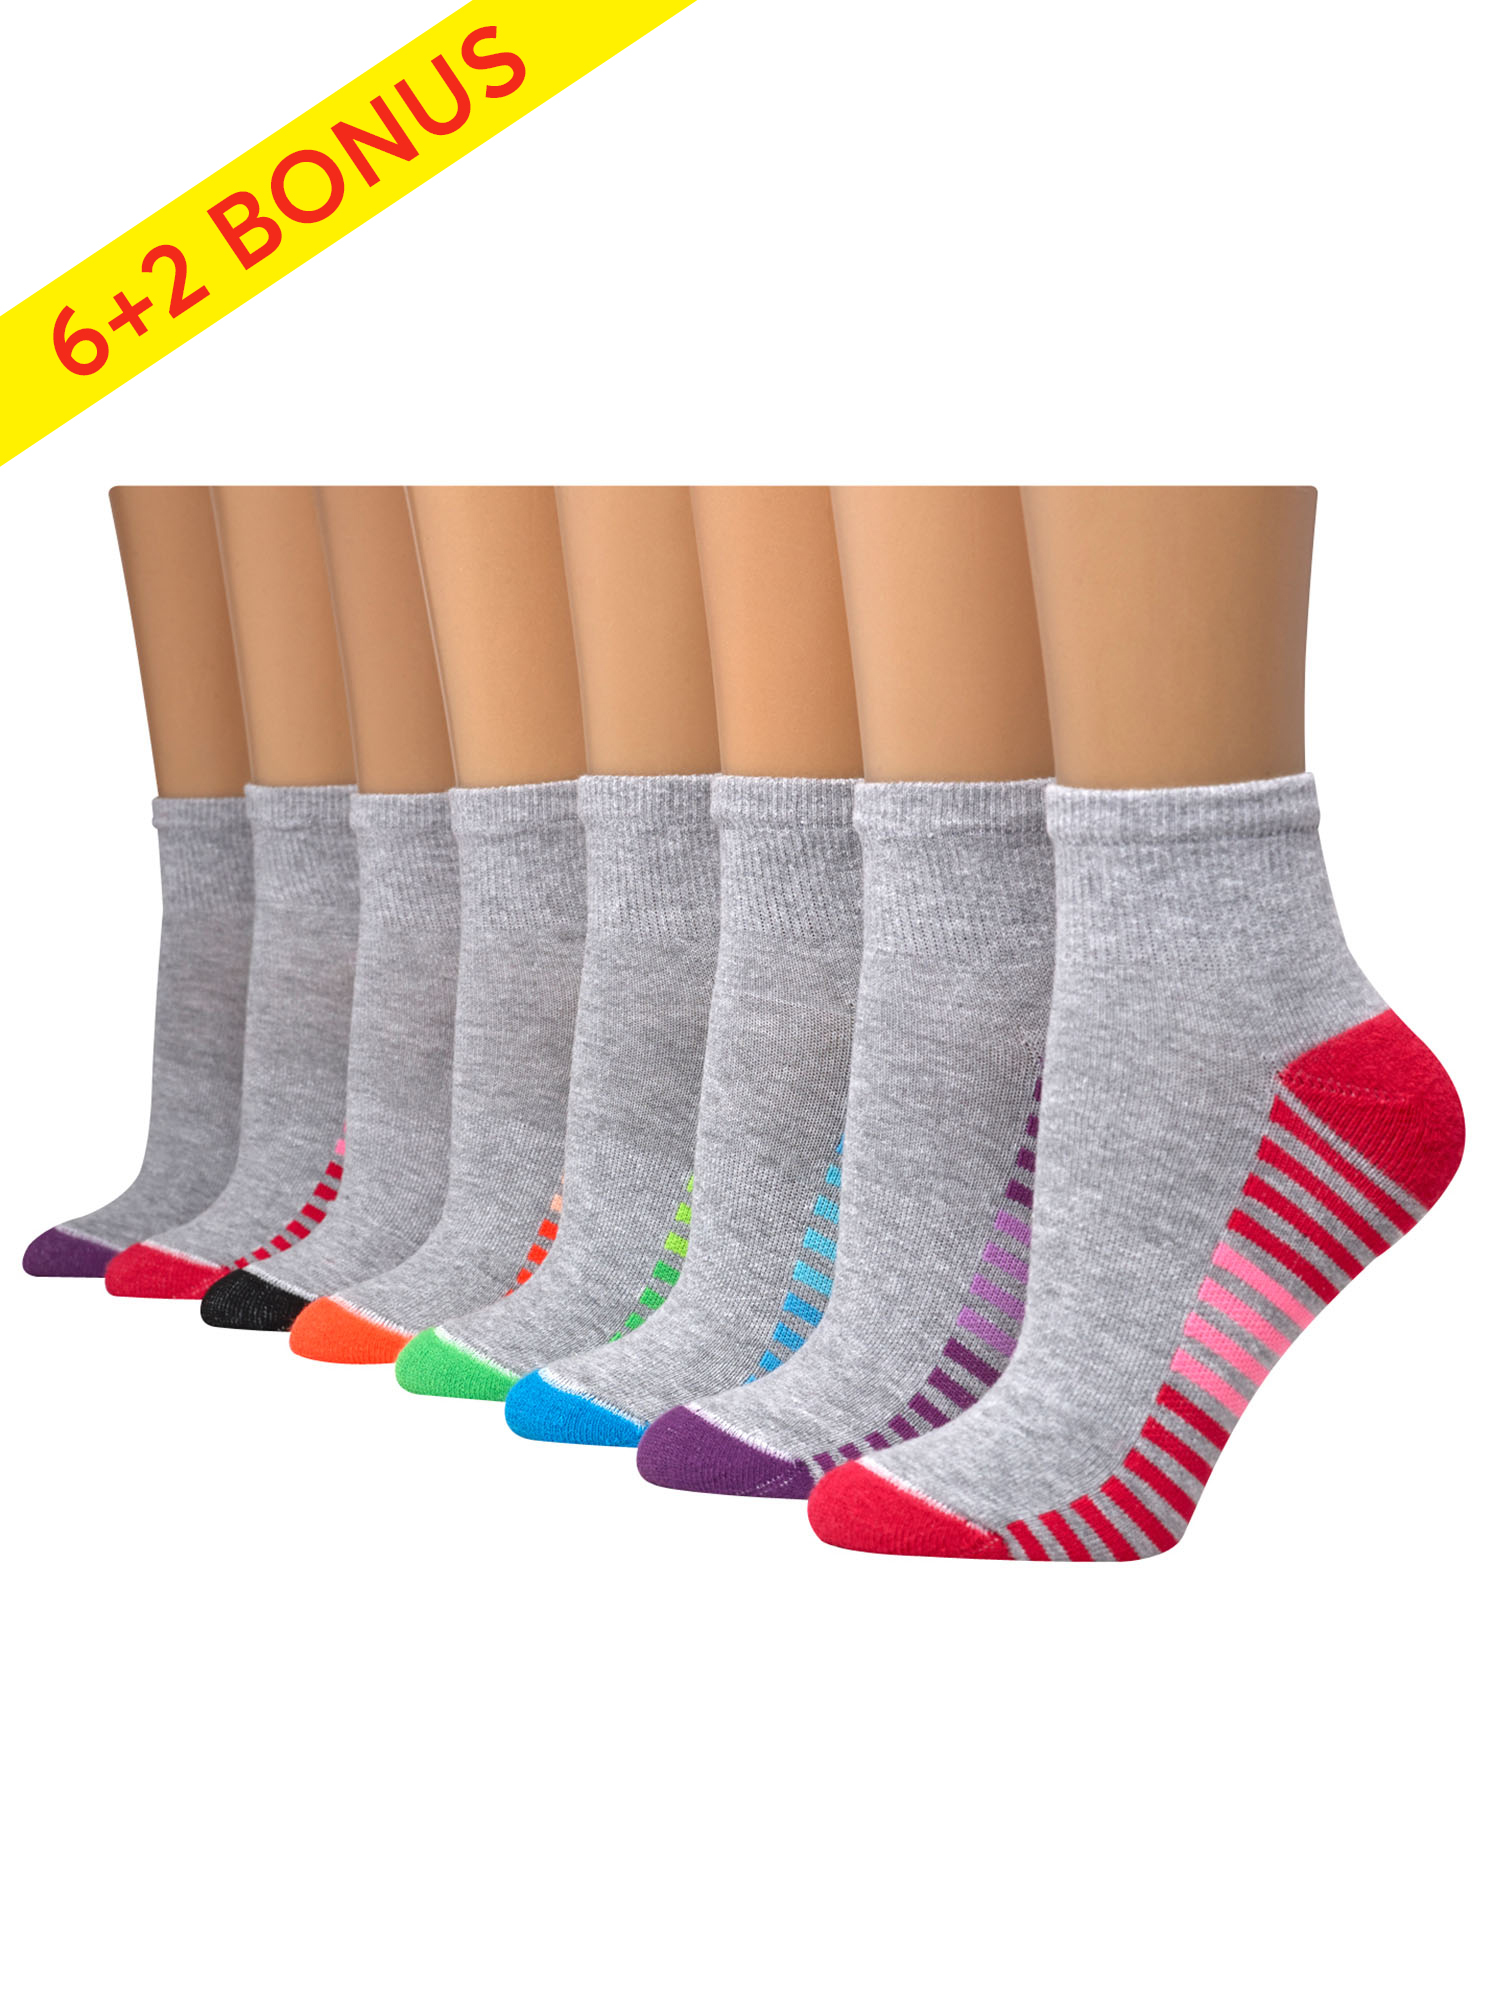 Hanes sport cool comfort ankle socks (women's), 6+2 bonus pack - image 1 of 4